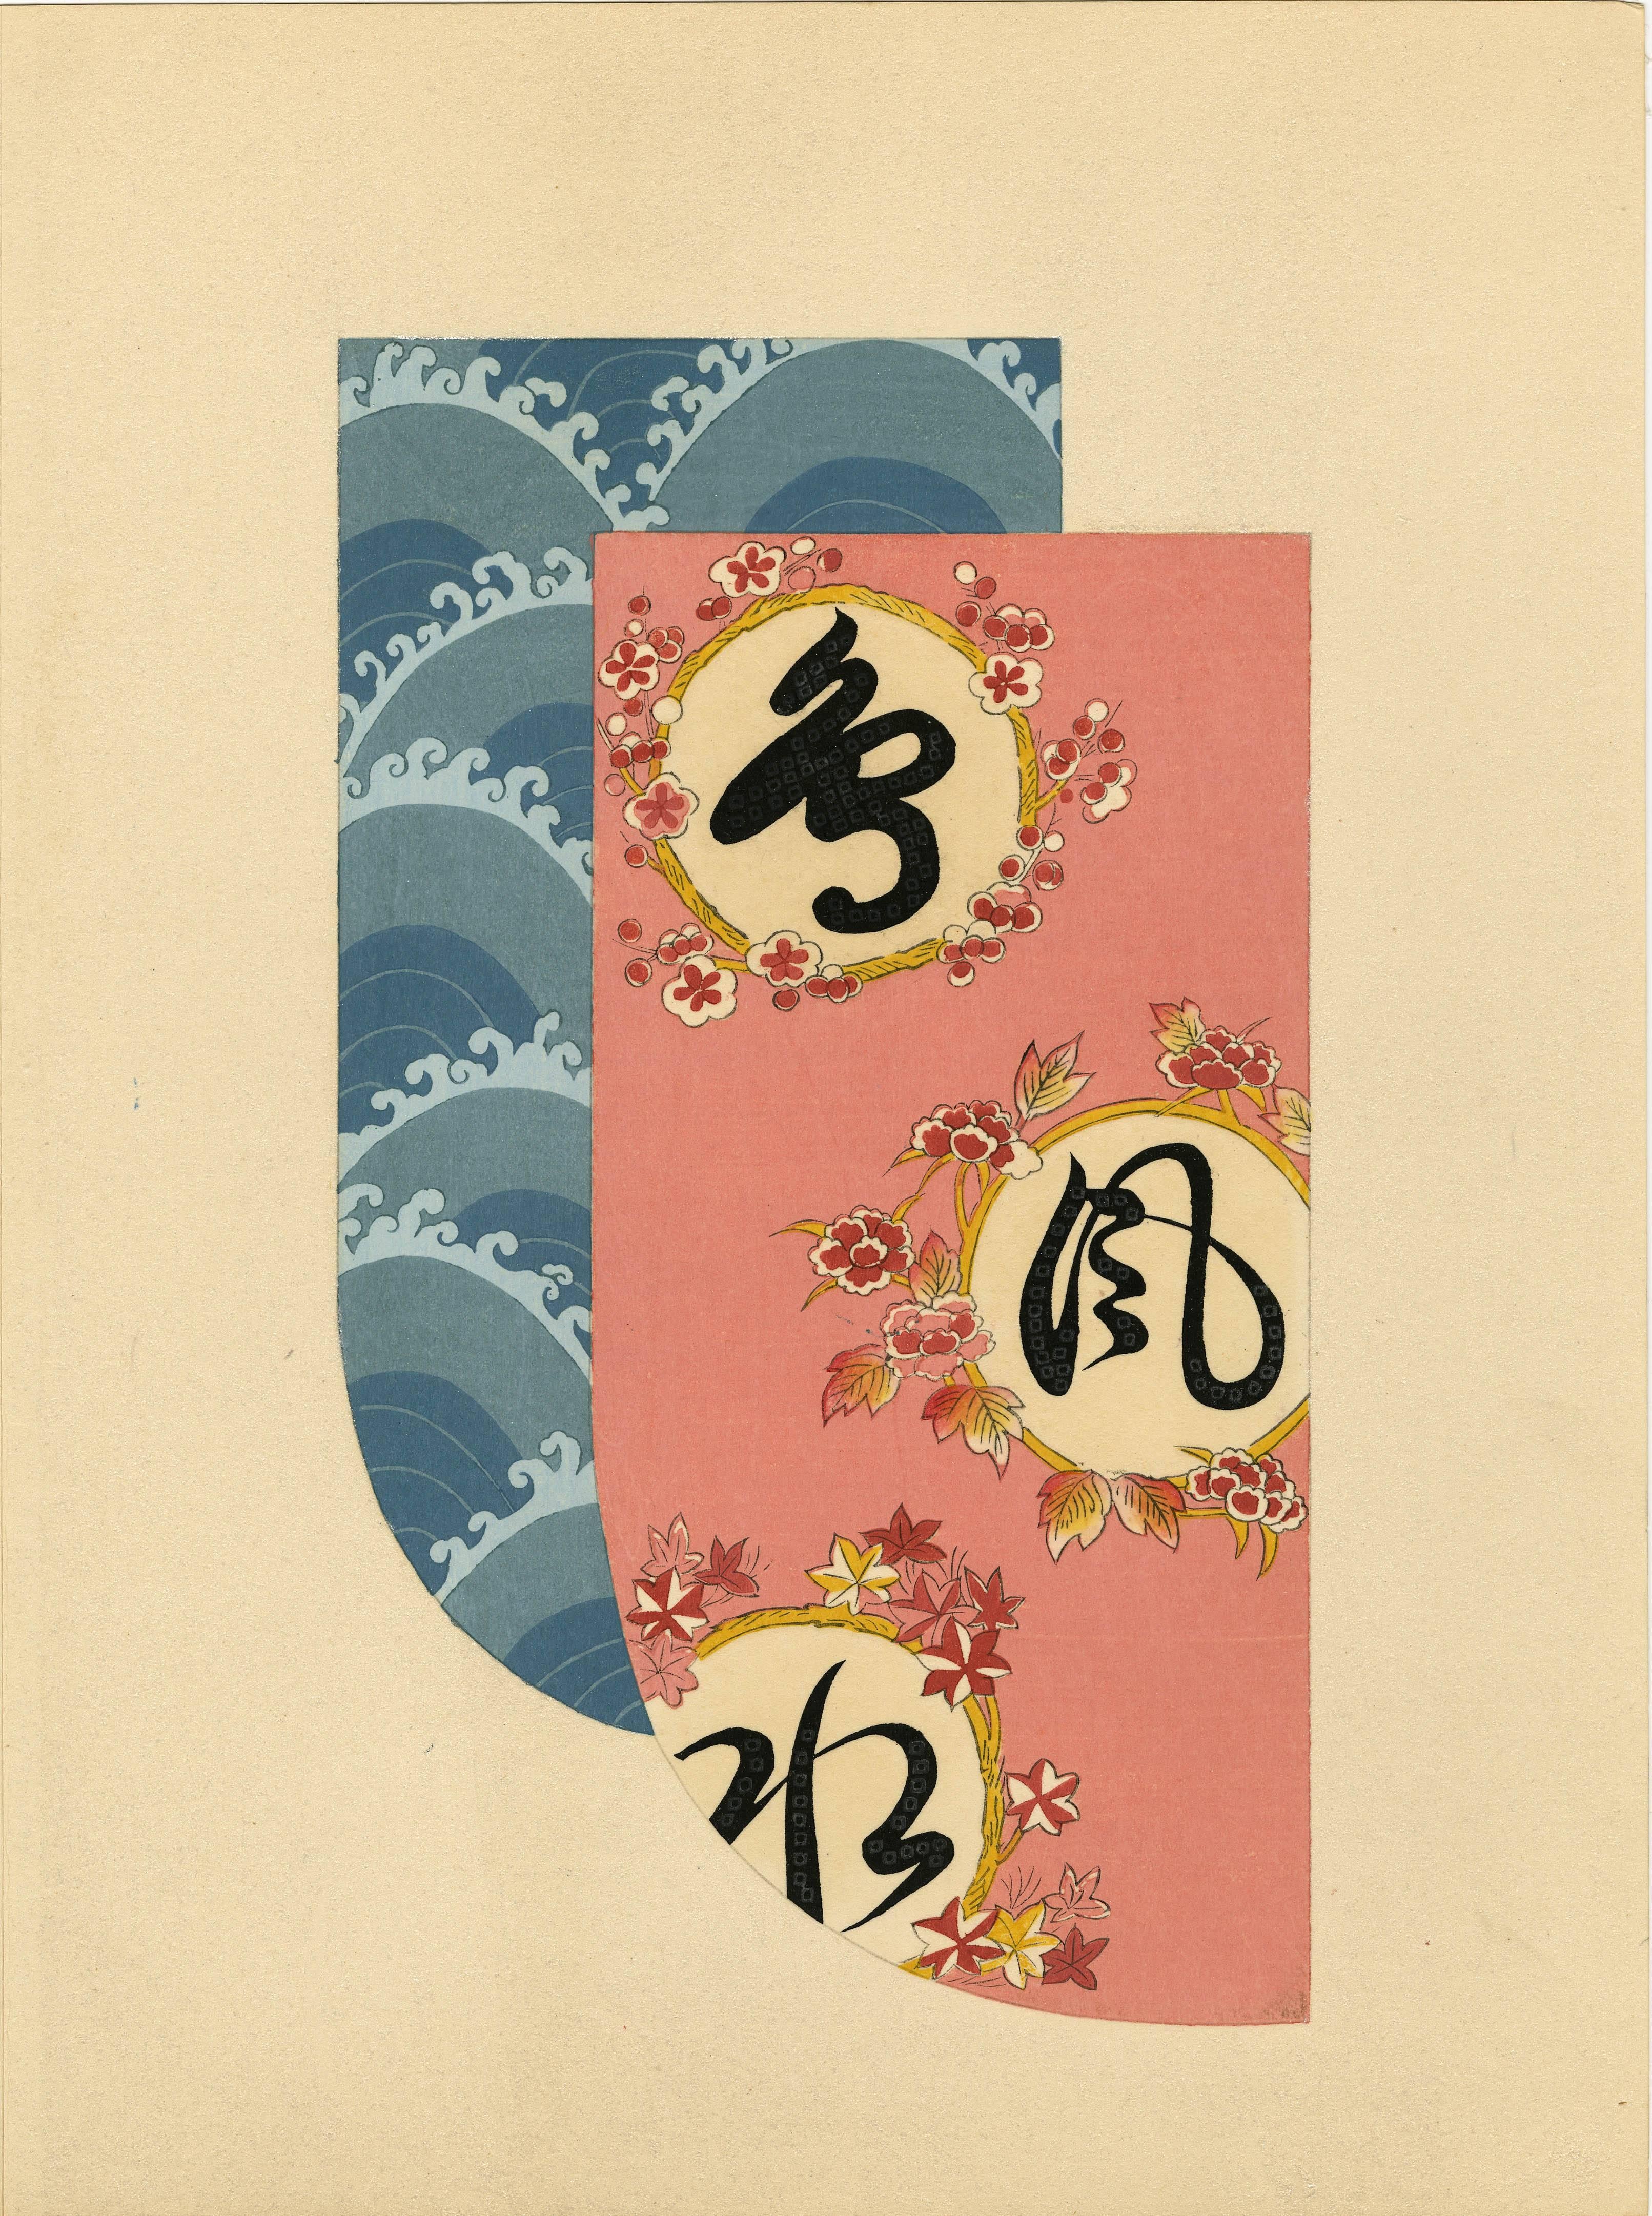 Unknown Still-Life Print - Kimono Fabric Design